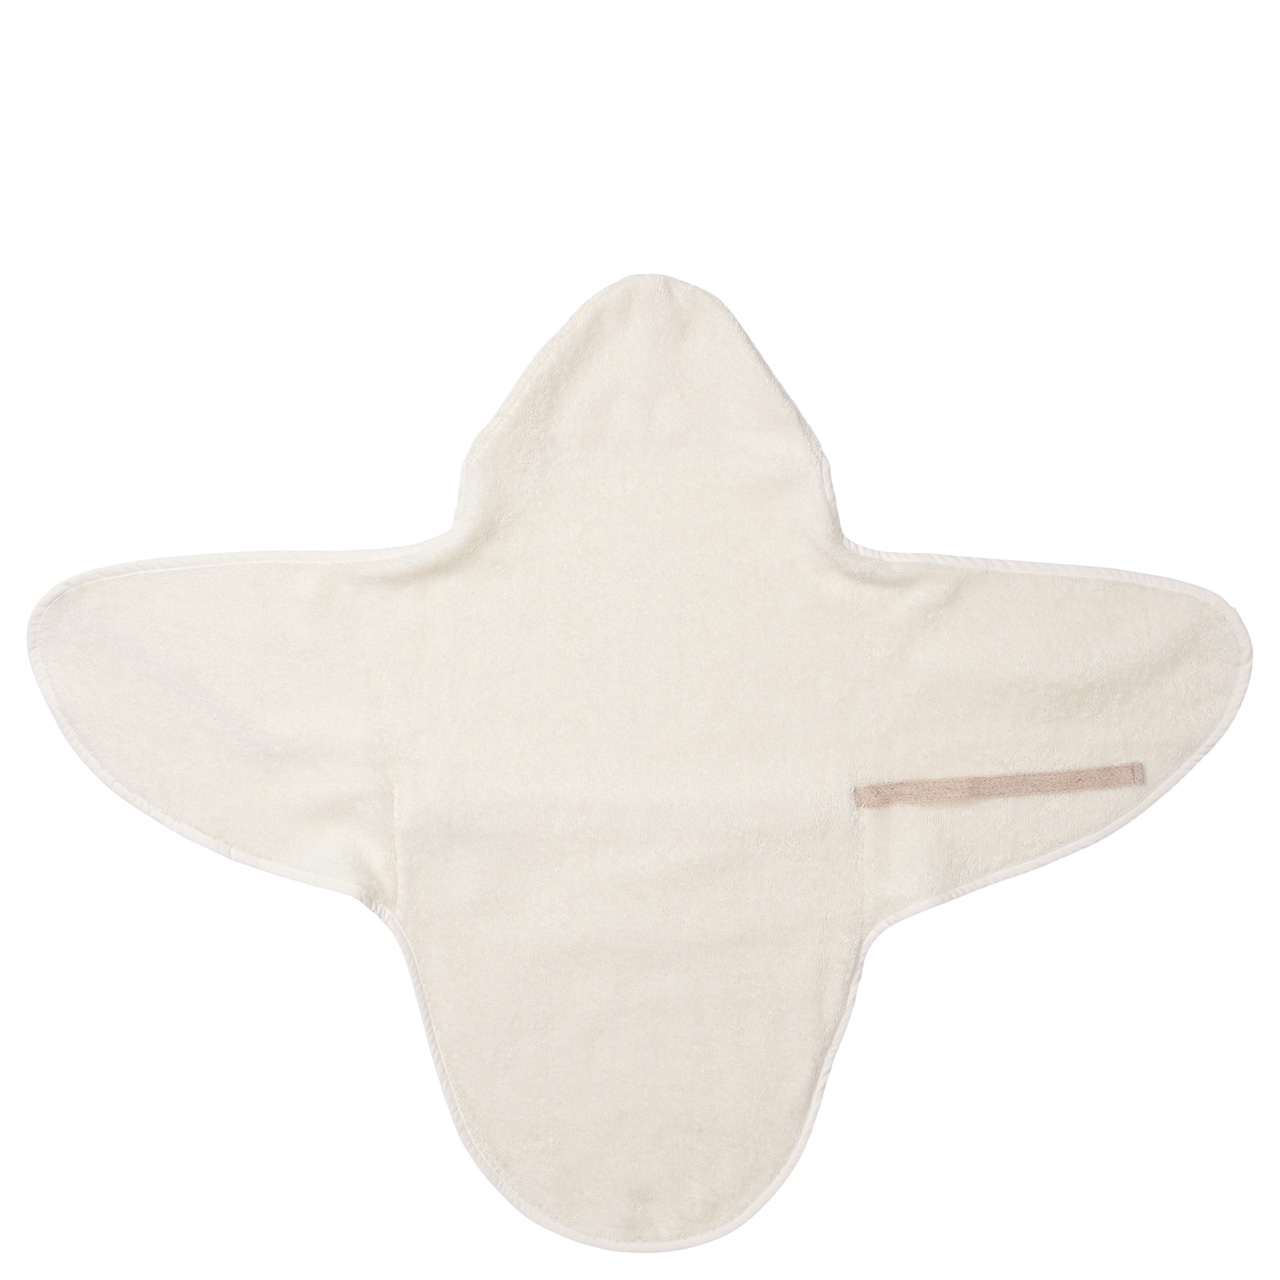 Umschlagtuch für Neugeborene Dijon Daily warm white